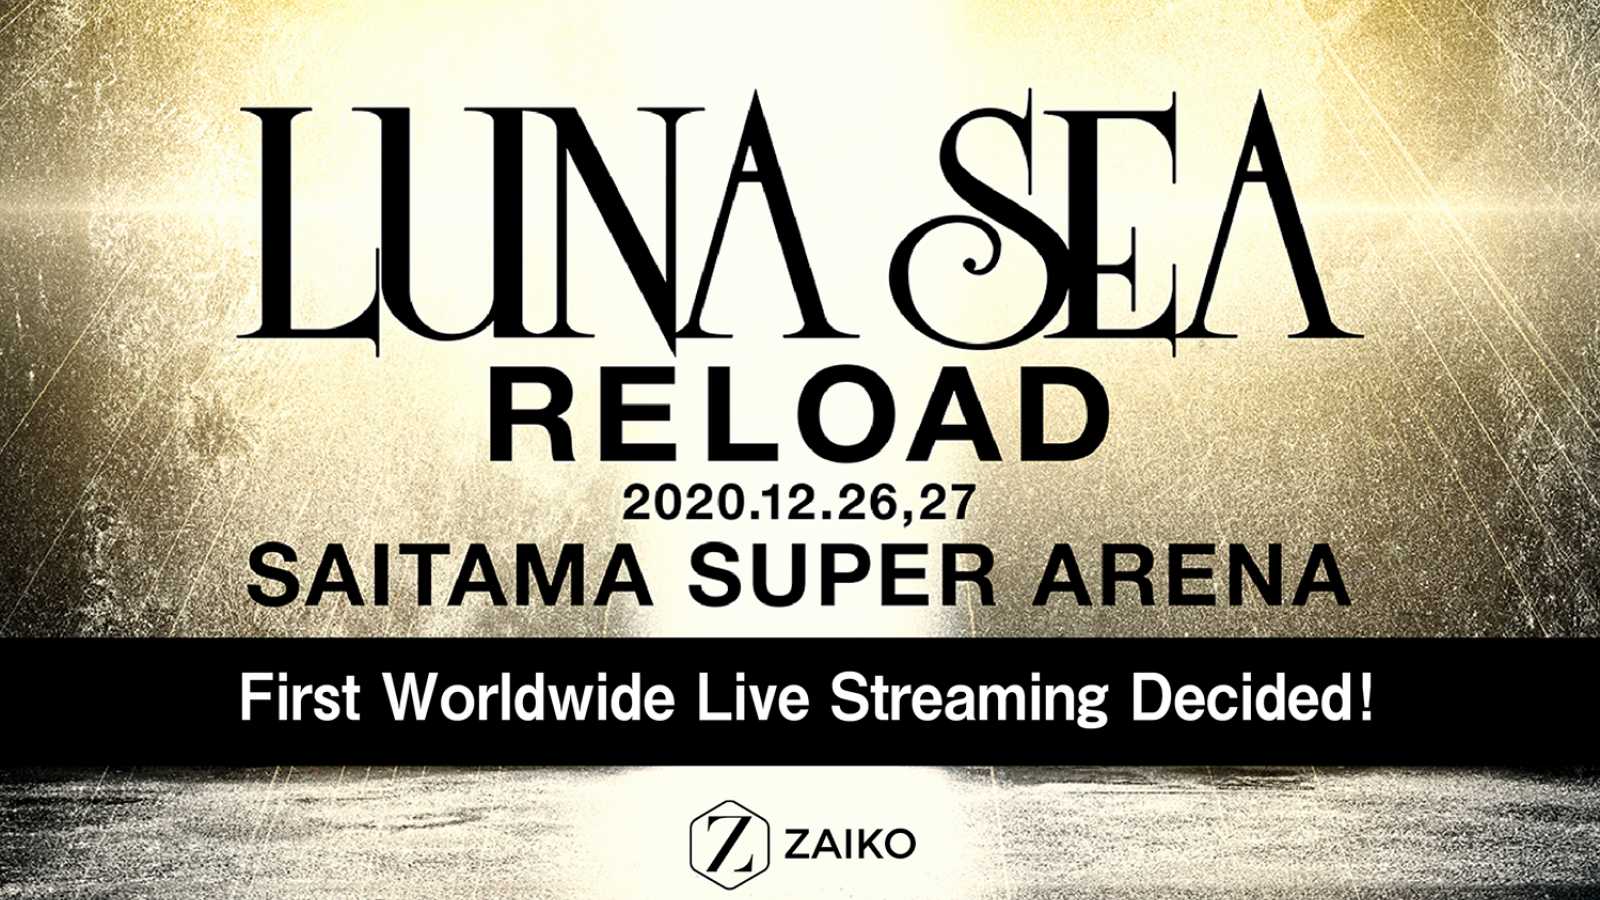 LUNA SEA będzie transmitować na całym świecie koncerty w Saitama Super Arena © LUNA SEA. All rights reserved.